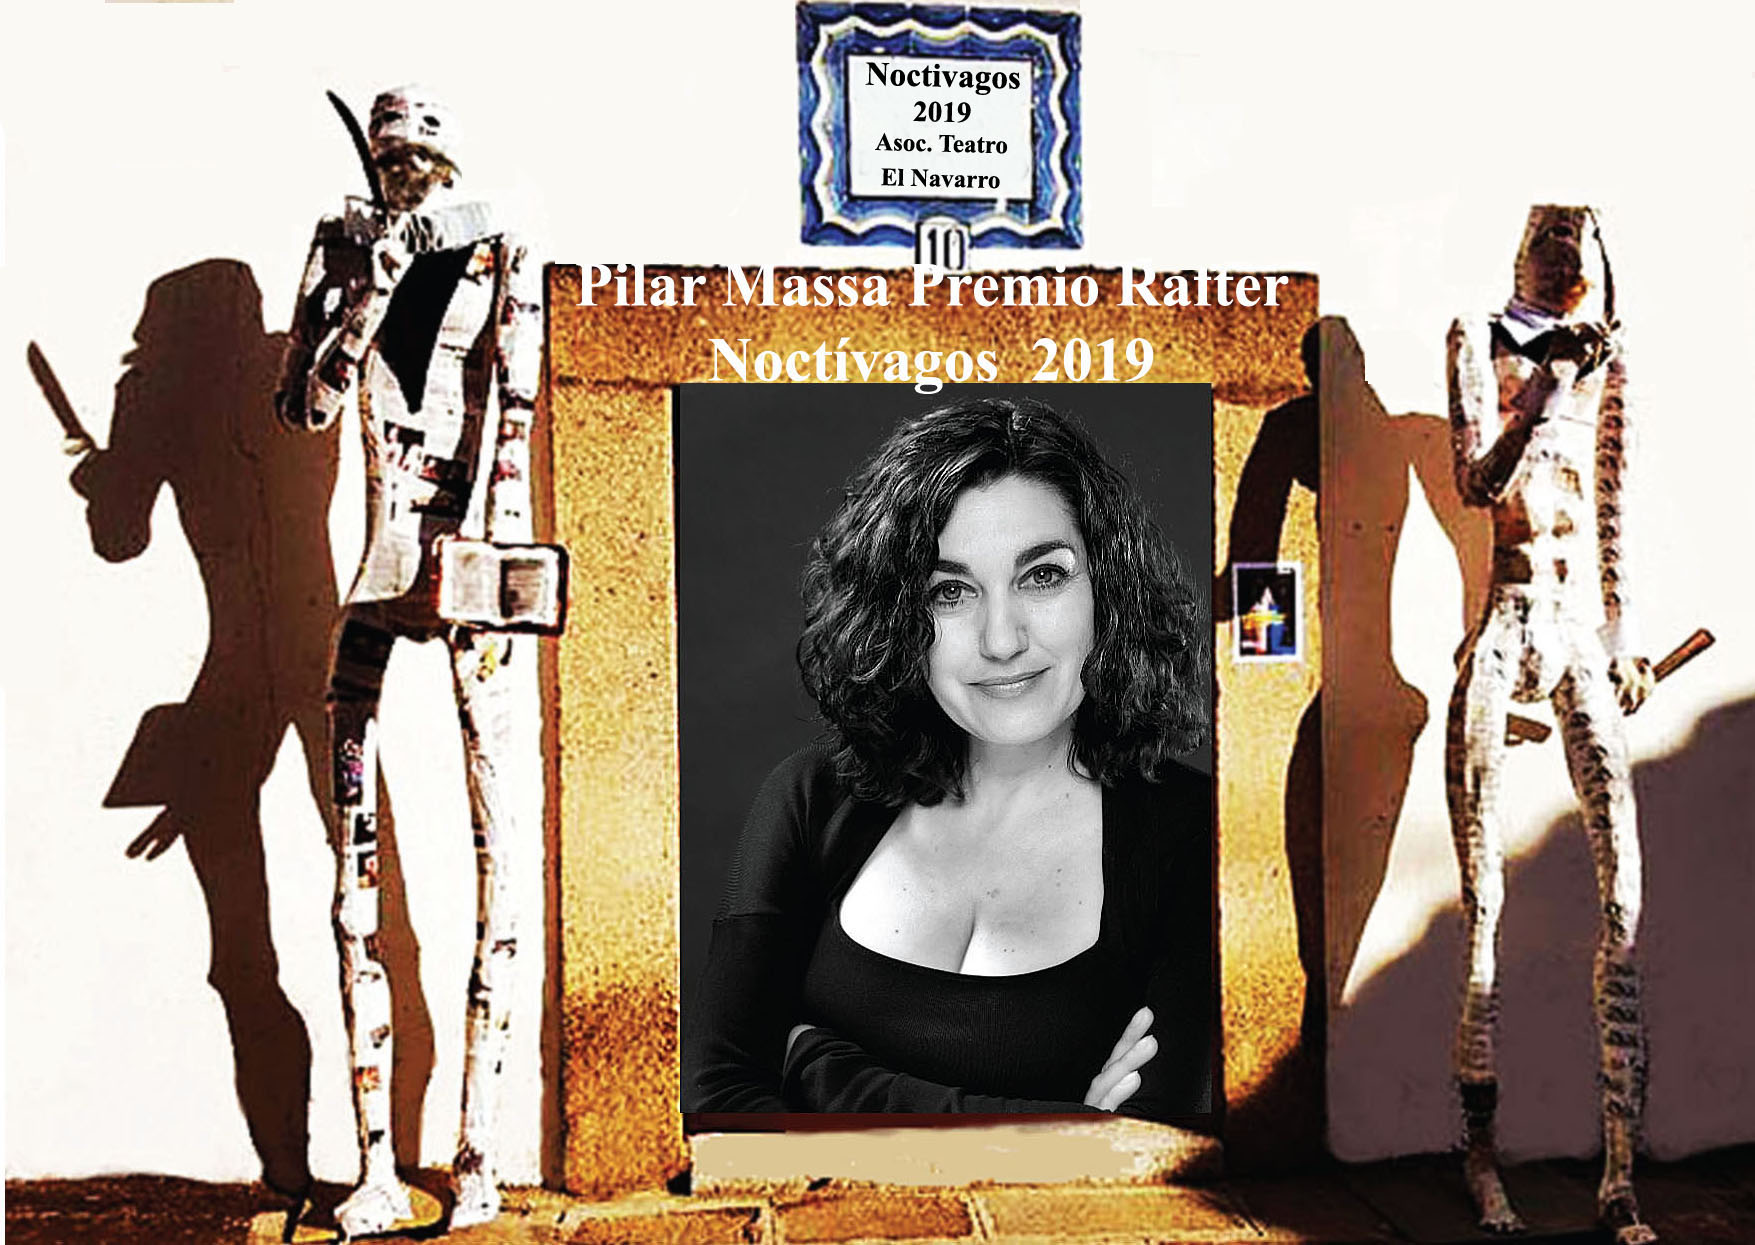 Pilar Massa Premio “Denis Rafter” en Noctívagos 2019 por su labor artística y social